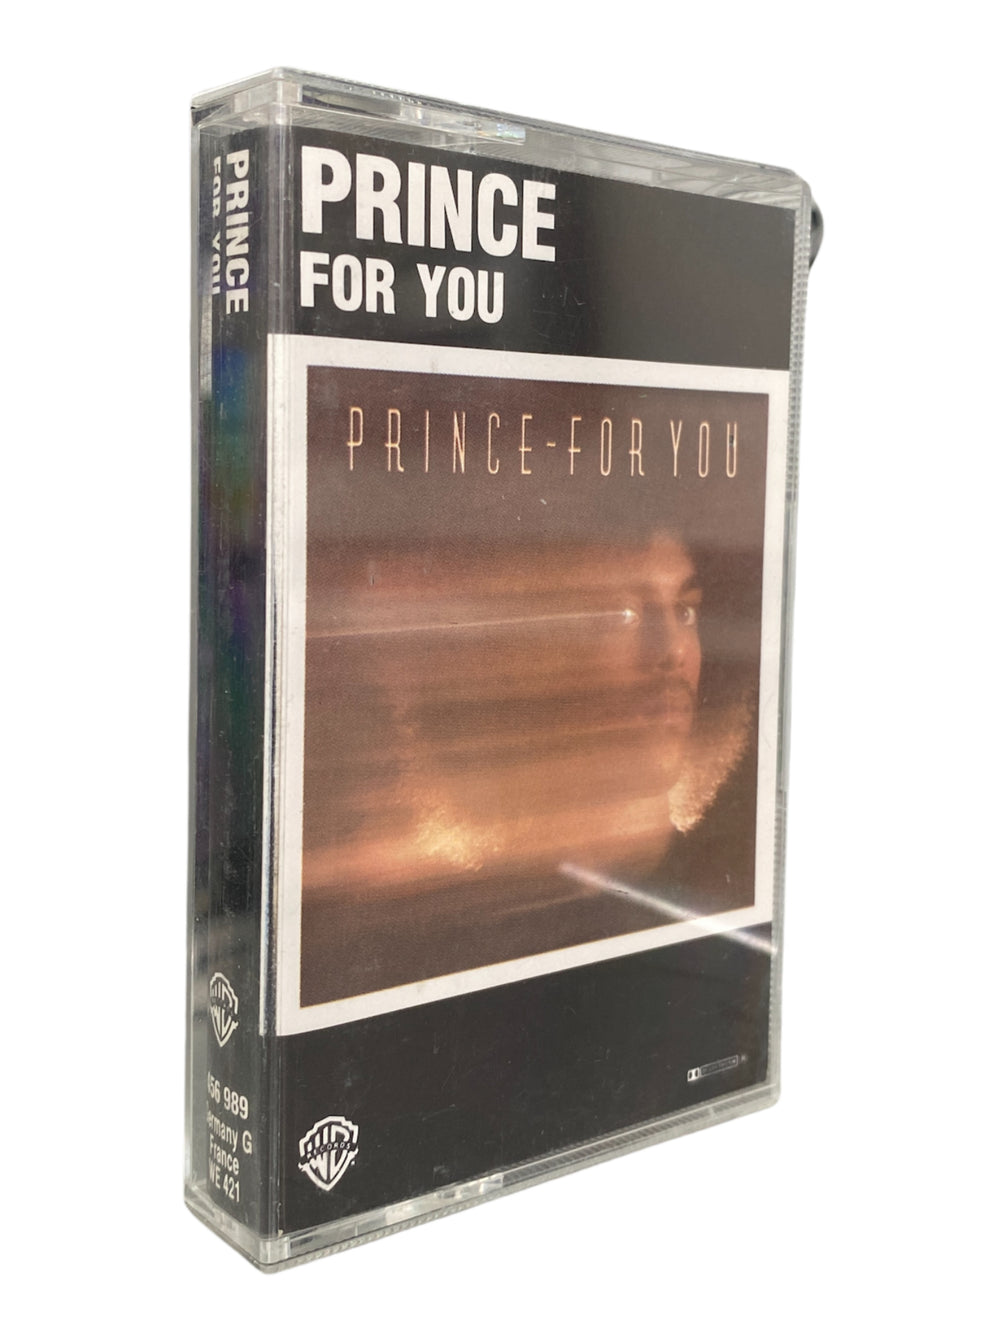 Prince For You 1978 UK Original Cassette Tape Album